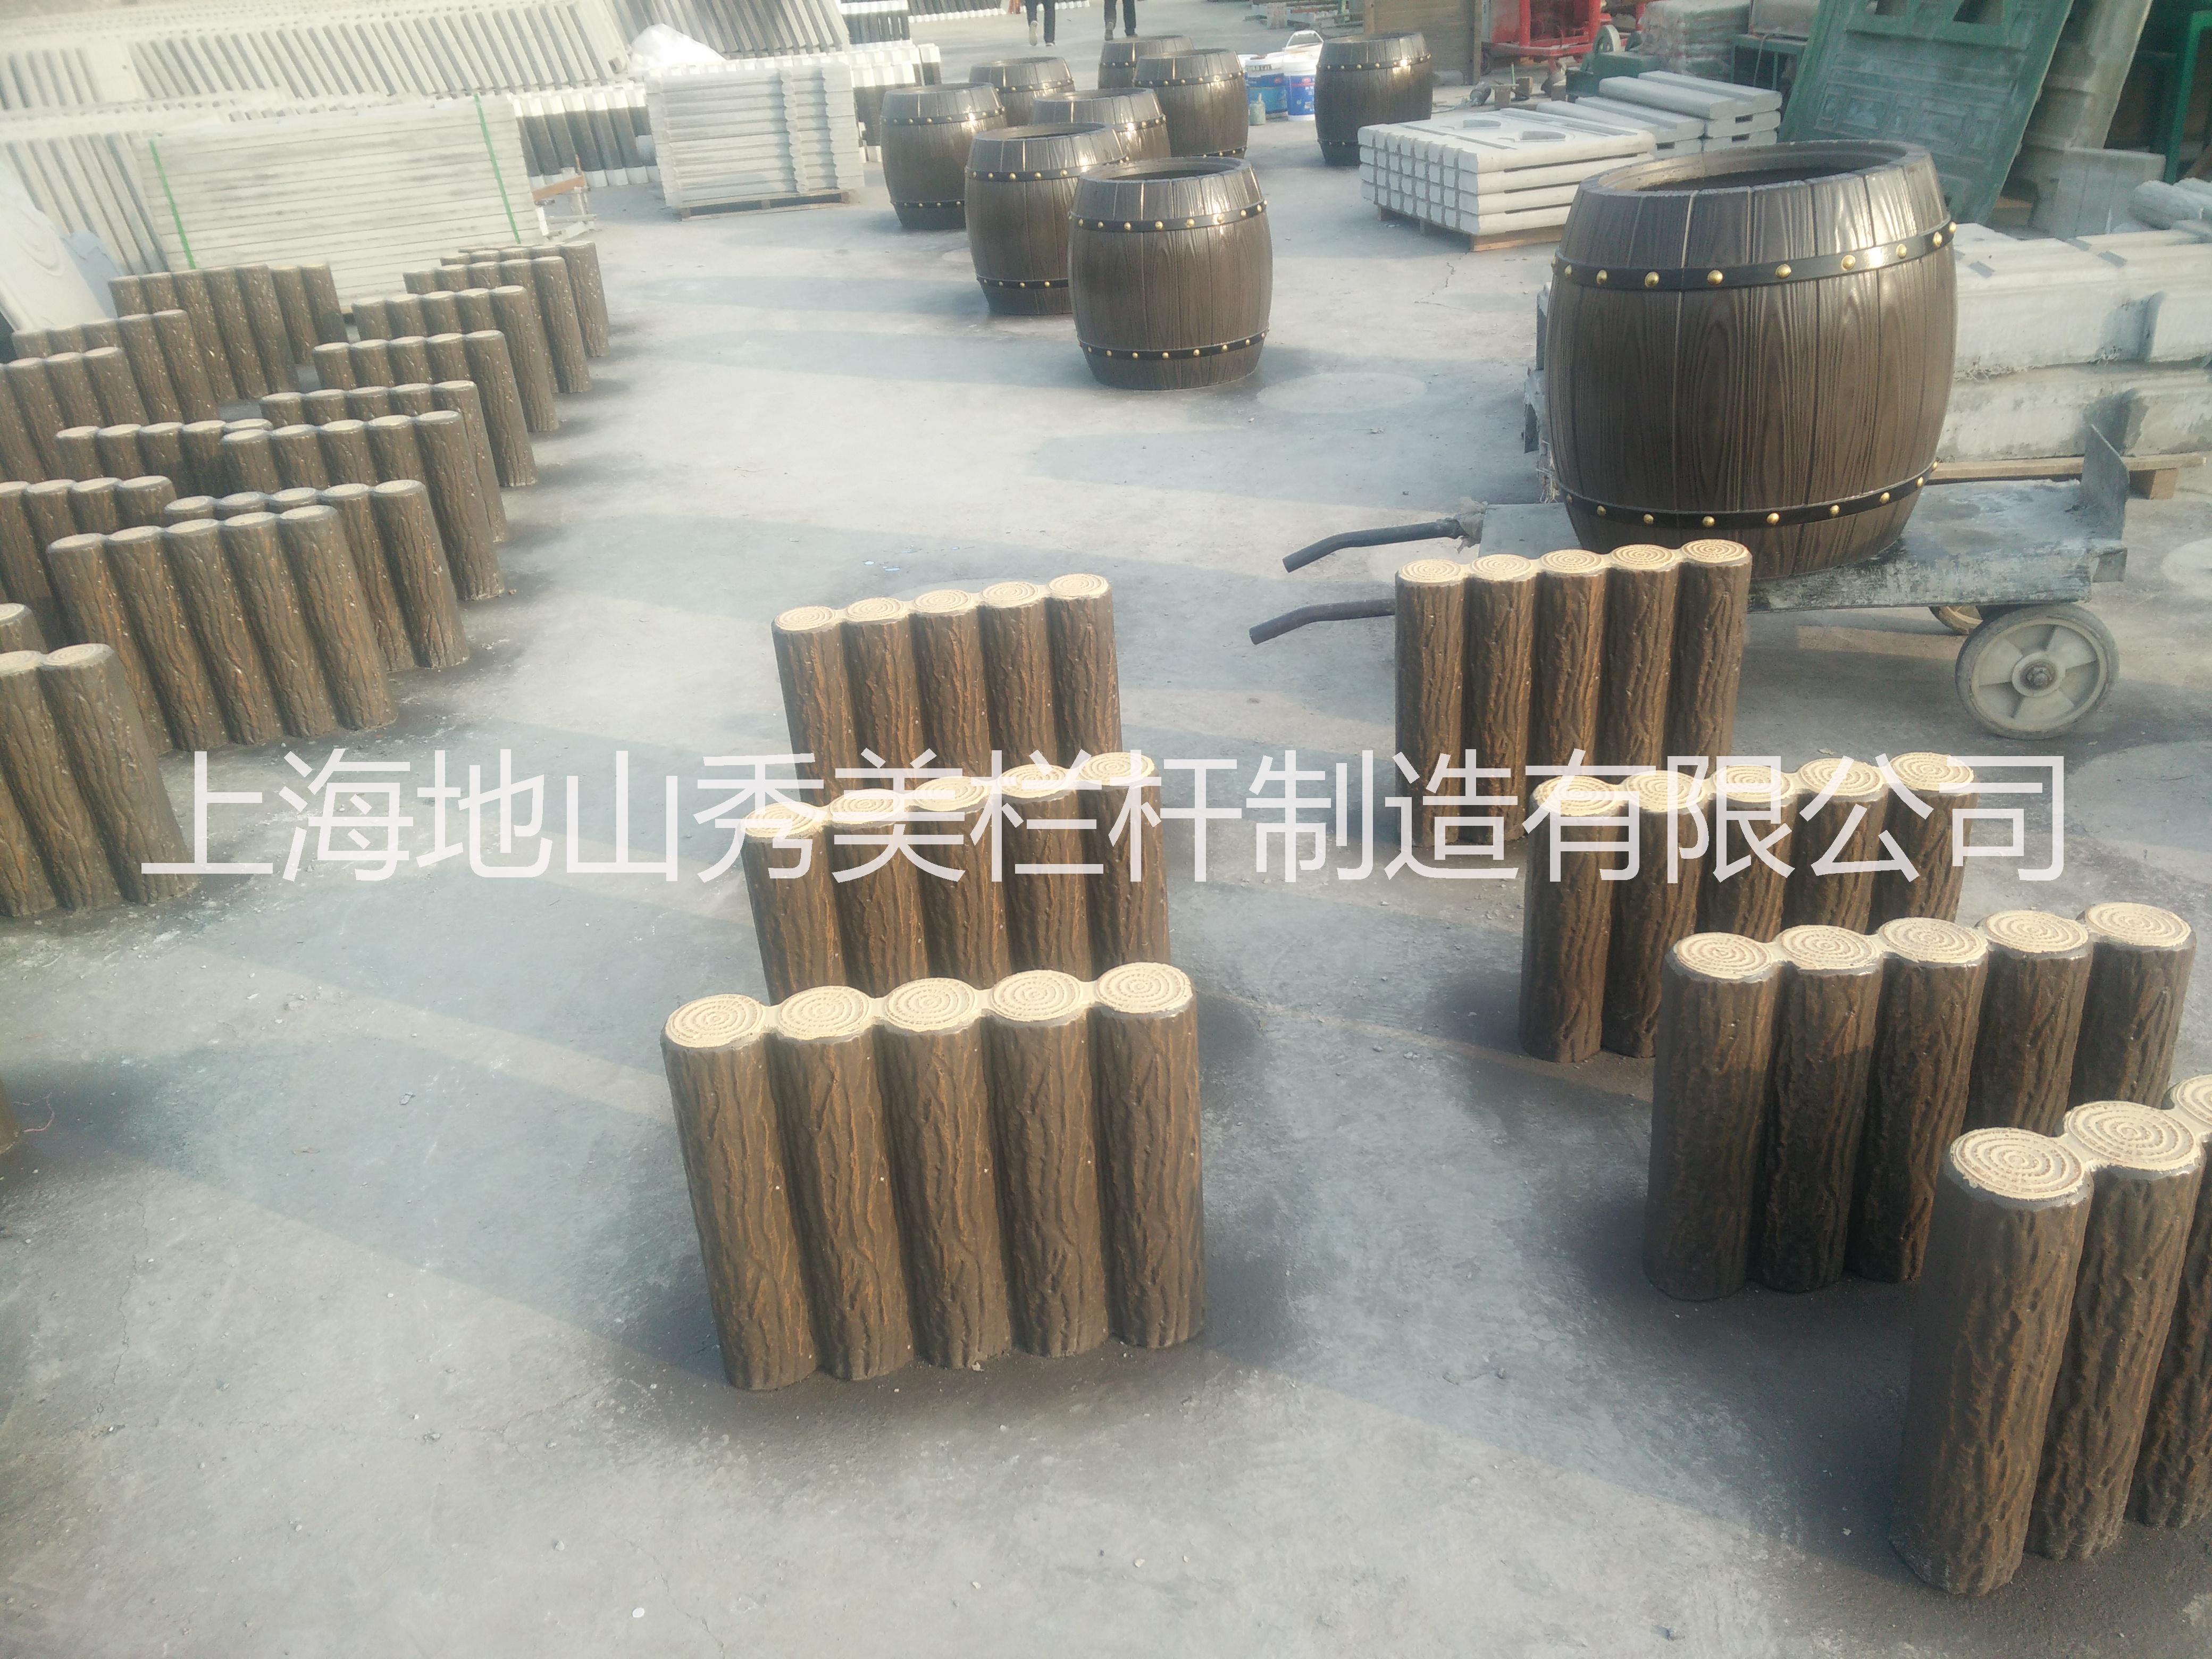 仿木桩头供应仿木桩头定做\上海仿木桩头批发\上海仿木桩头制作